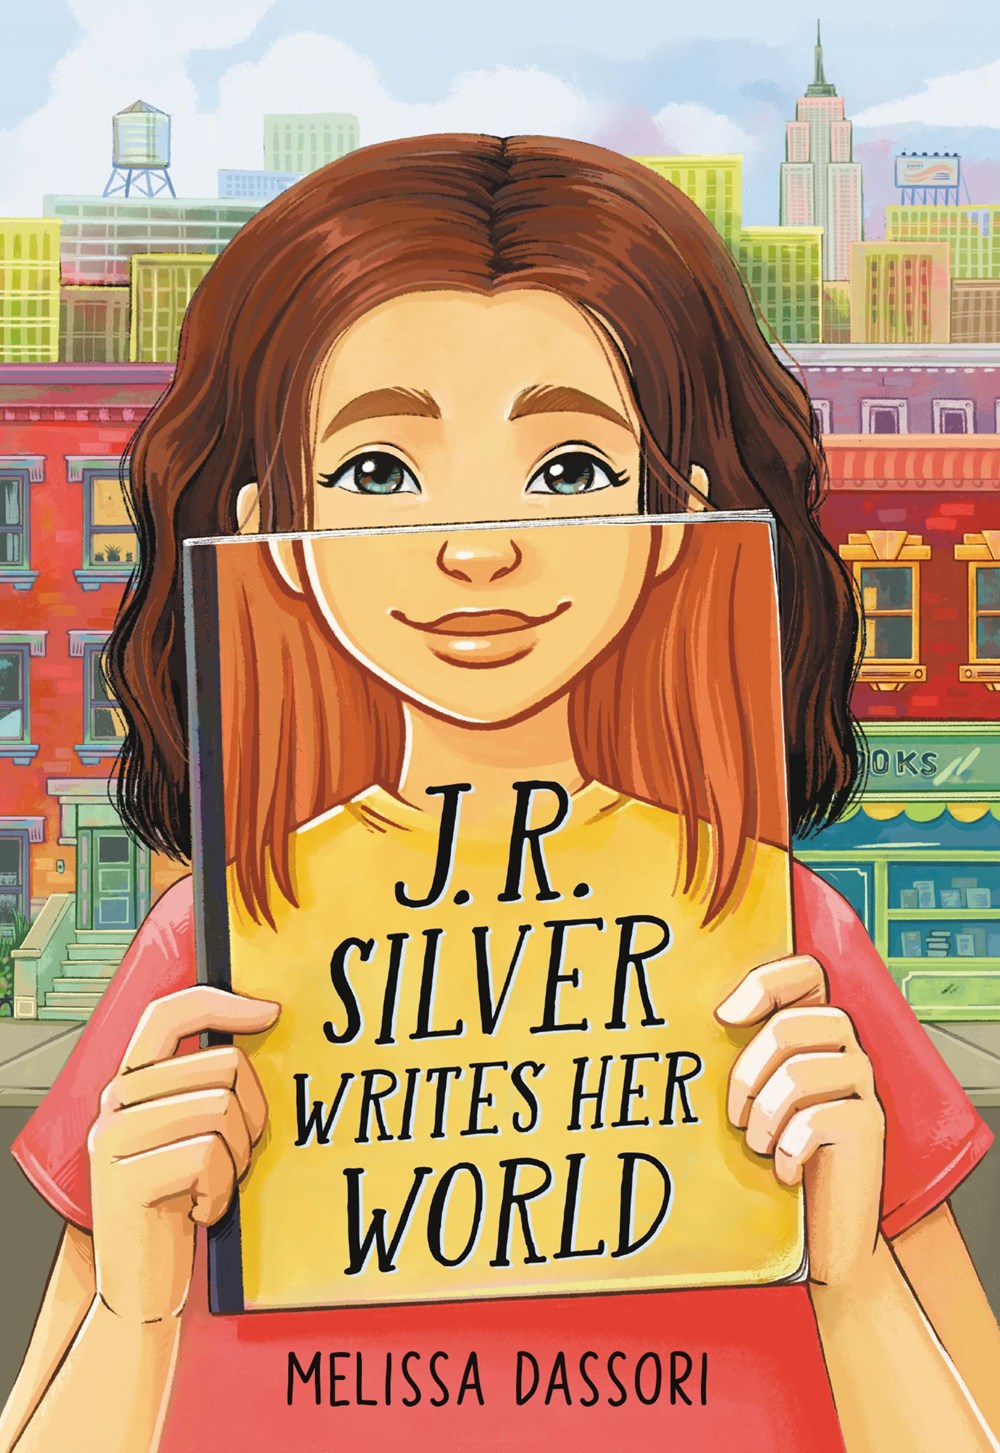 J.R. Silver Writes Her World by Melissa Dassori